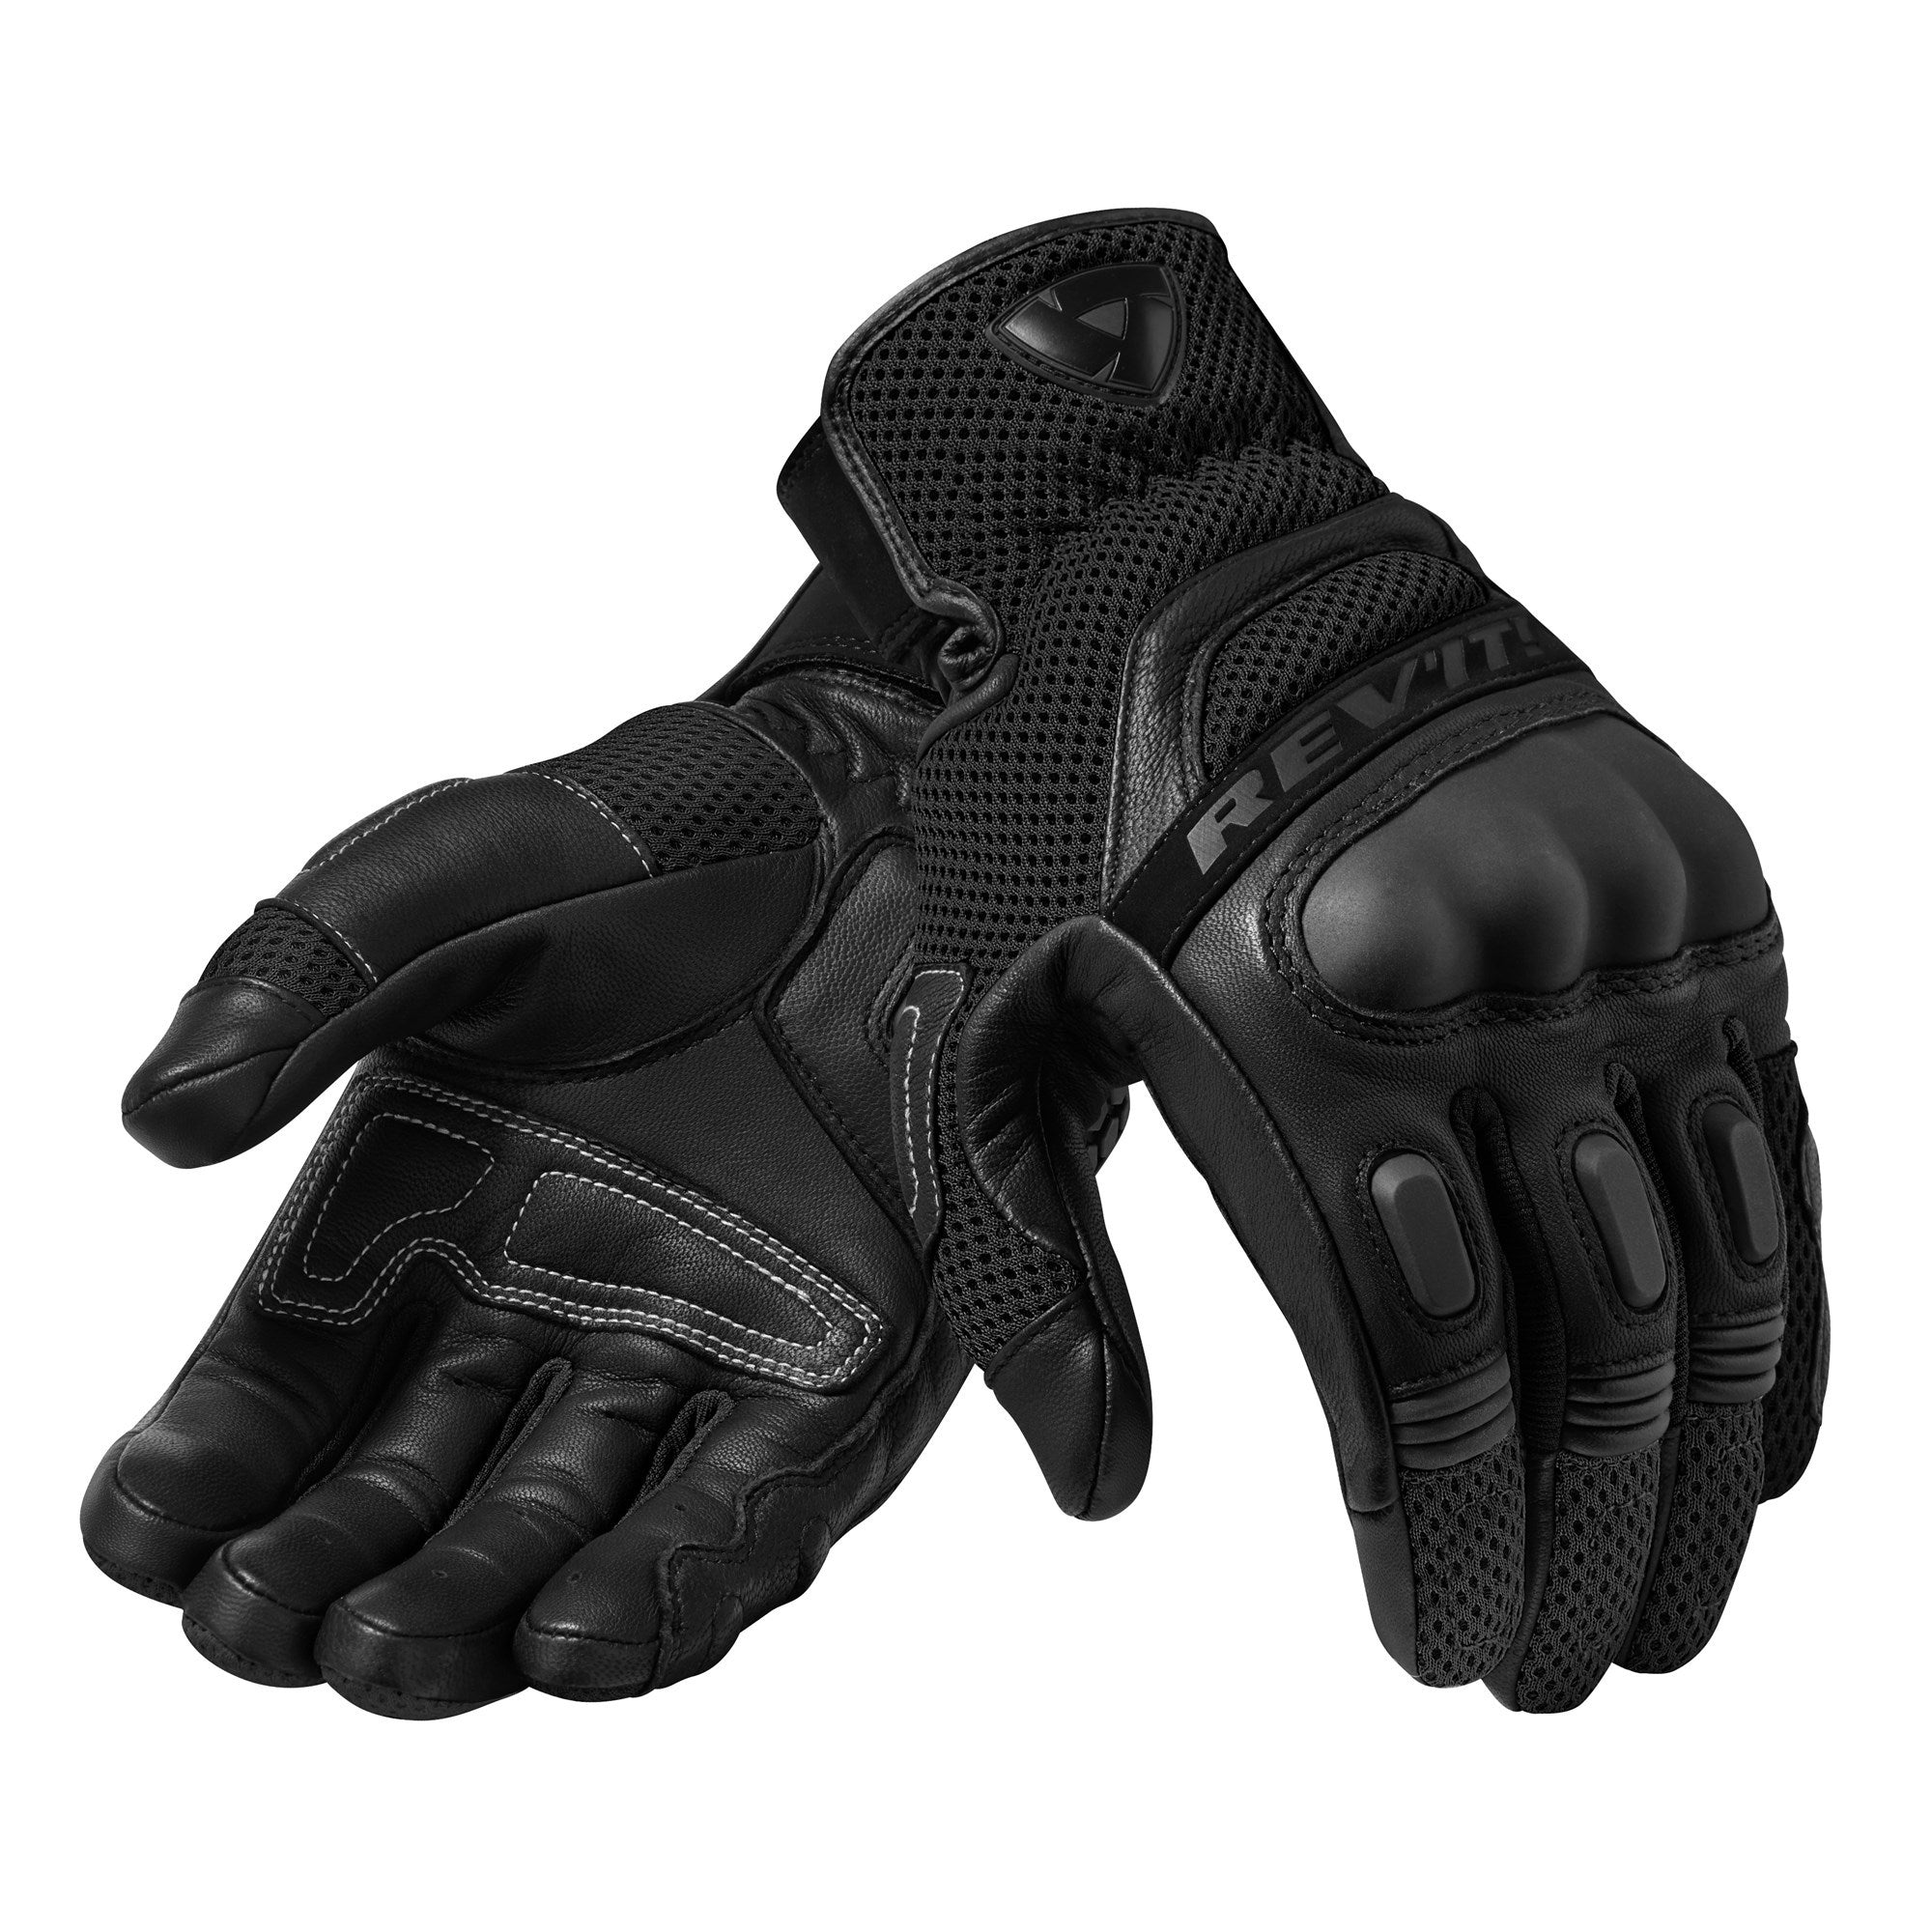 Rev'it! Dirt 3 Gloves - Black